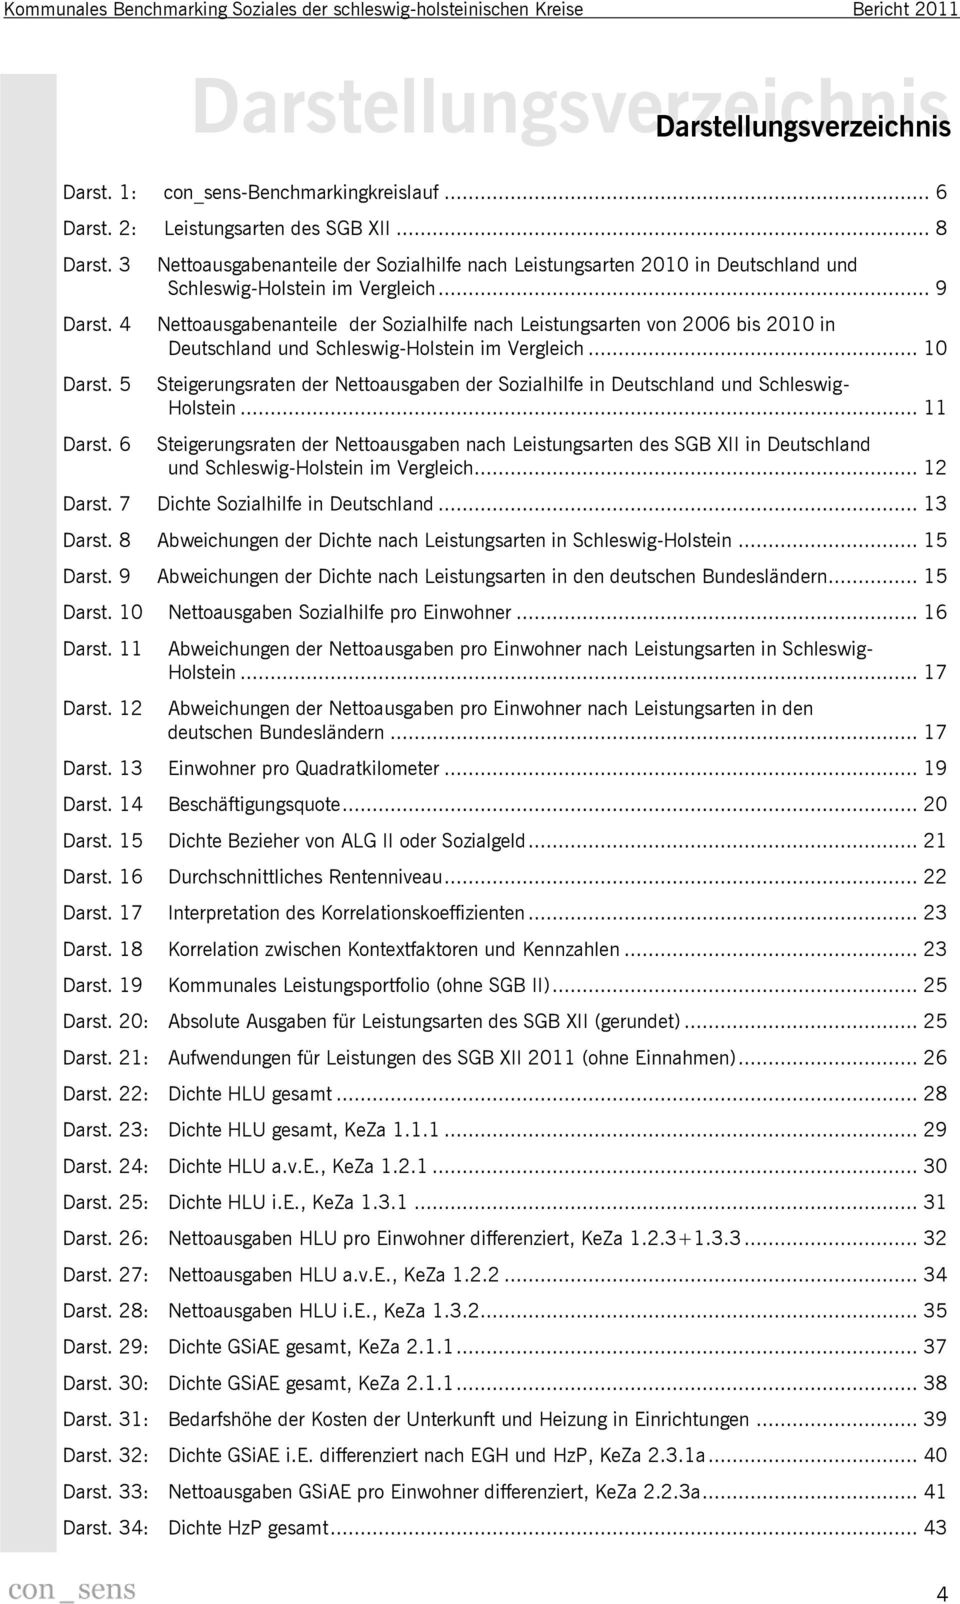 .. 9 Nettoausgabenanteile der Sozialhilfe nach Leistungsarten von 2006 bis 2010 in Deutschland und Schleswig-Holstein im Vergleich.